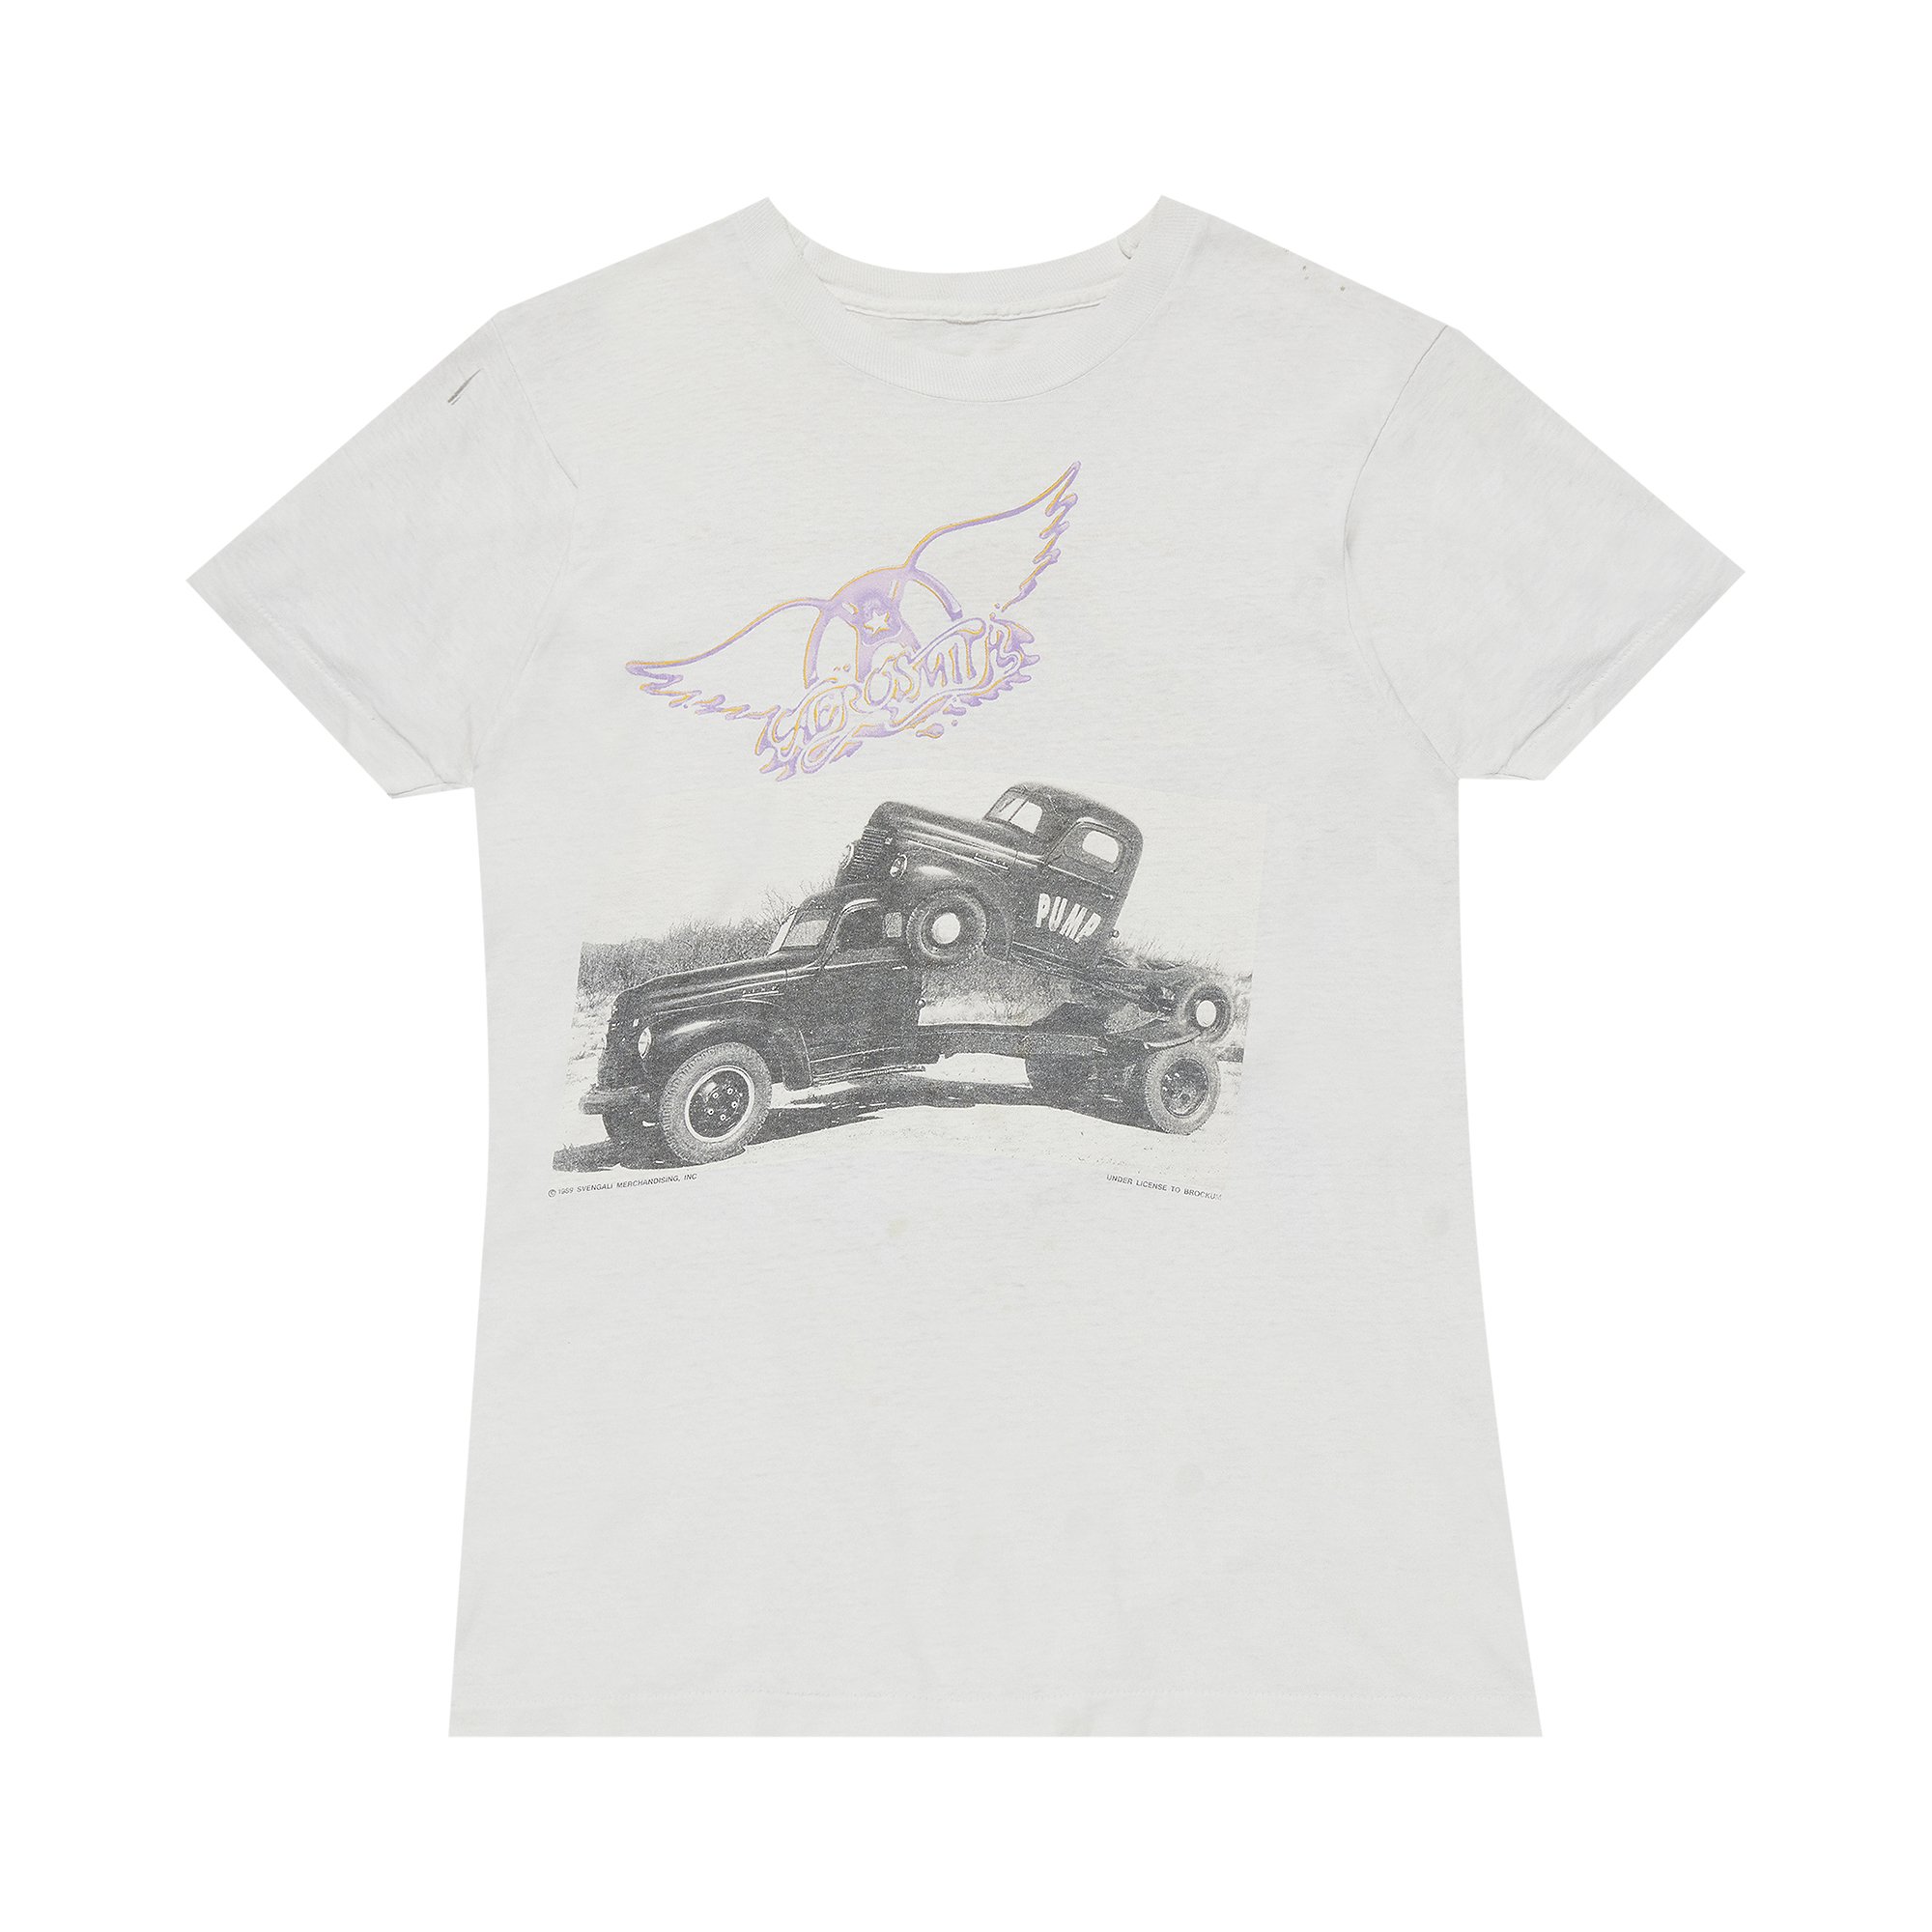 Винтажная футболка Aerosmith Pump с обложкой альбома, белая